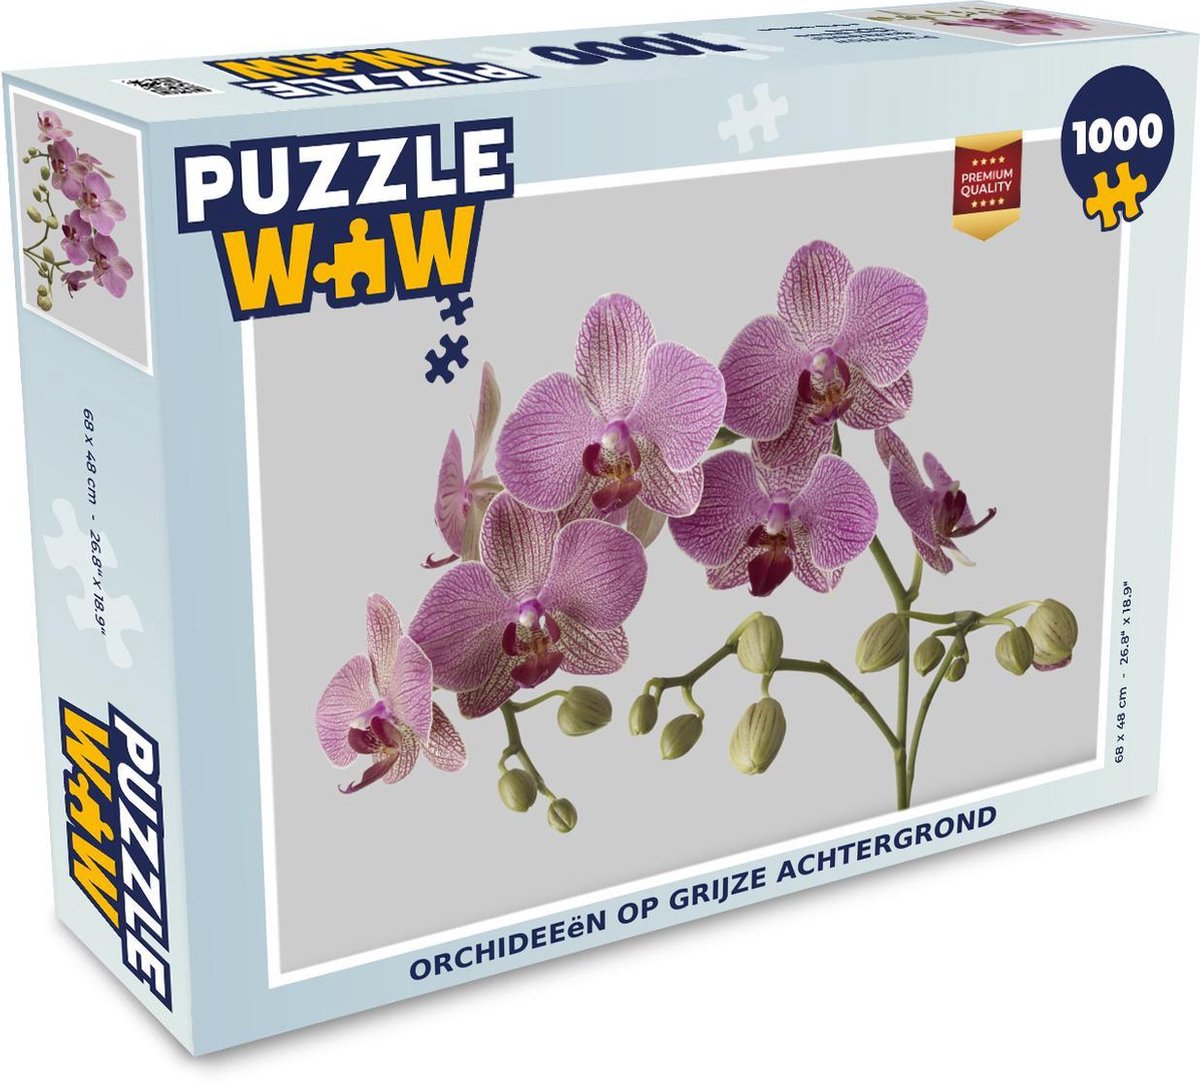 Afbeelding van product Puzzel 1000 stukjes volwassenen Orchidee 1000 stukjes - Orchideeën op grijze achtergrond - PuzzleWow heeft +100000 puzzels